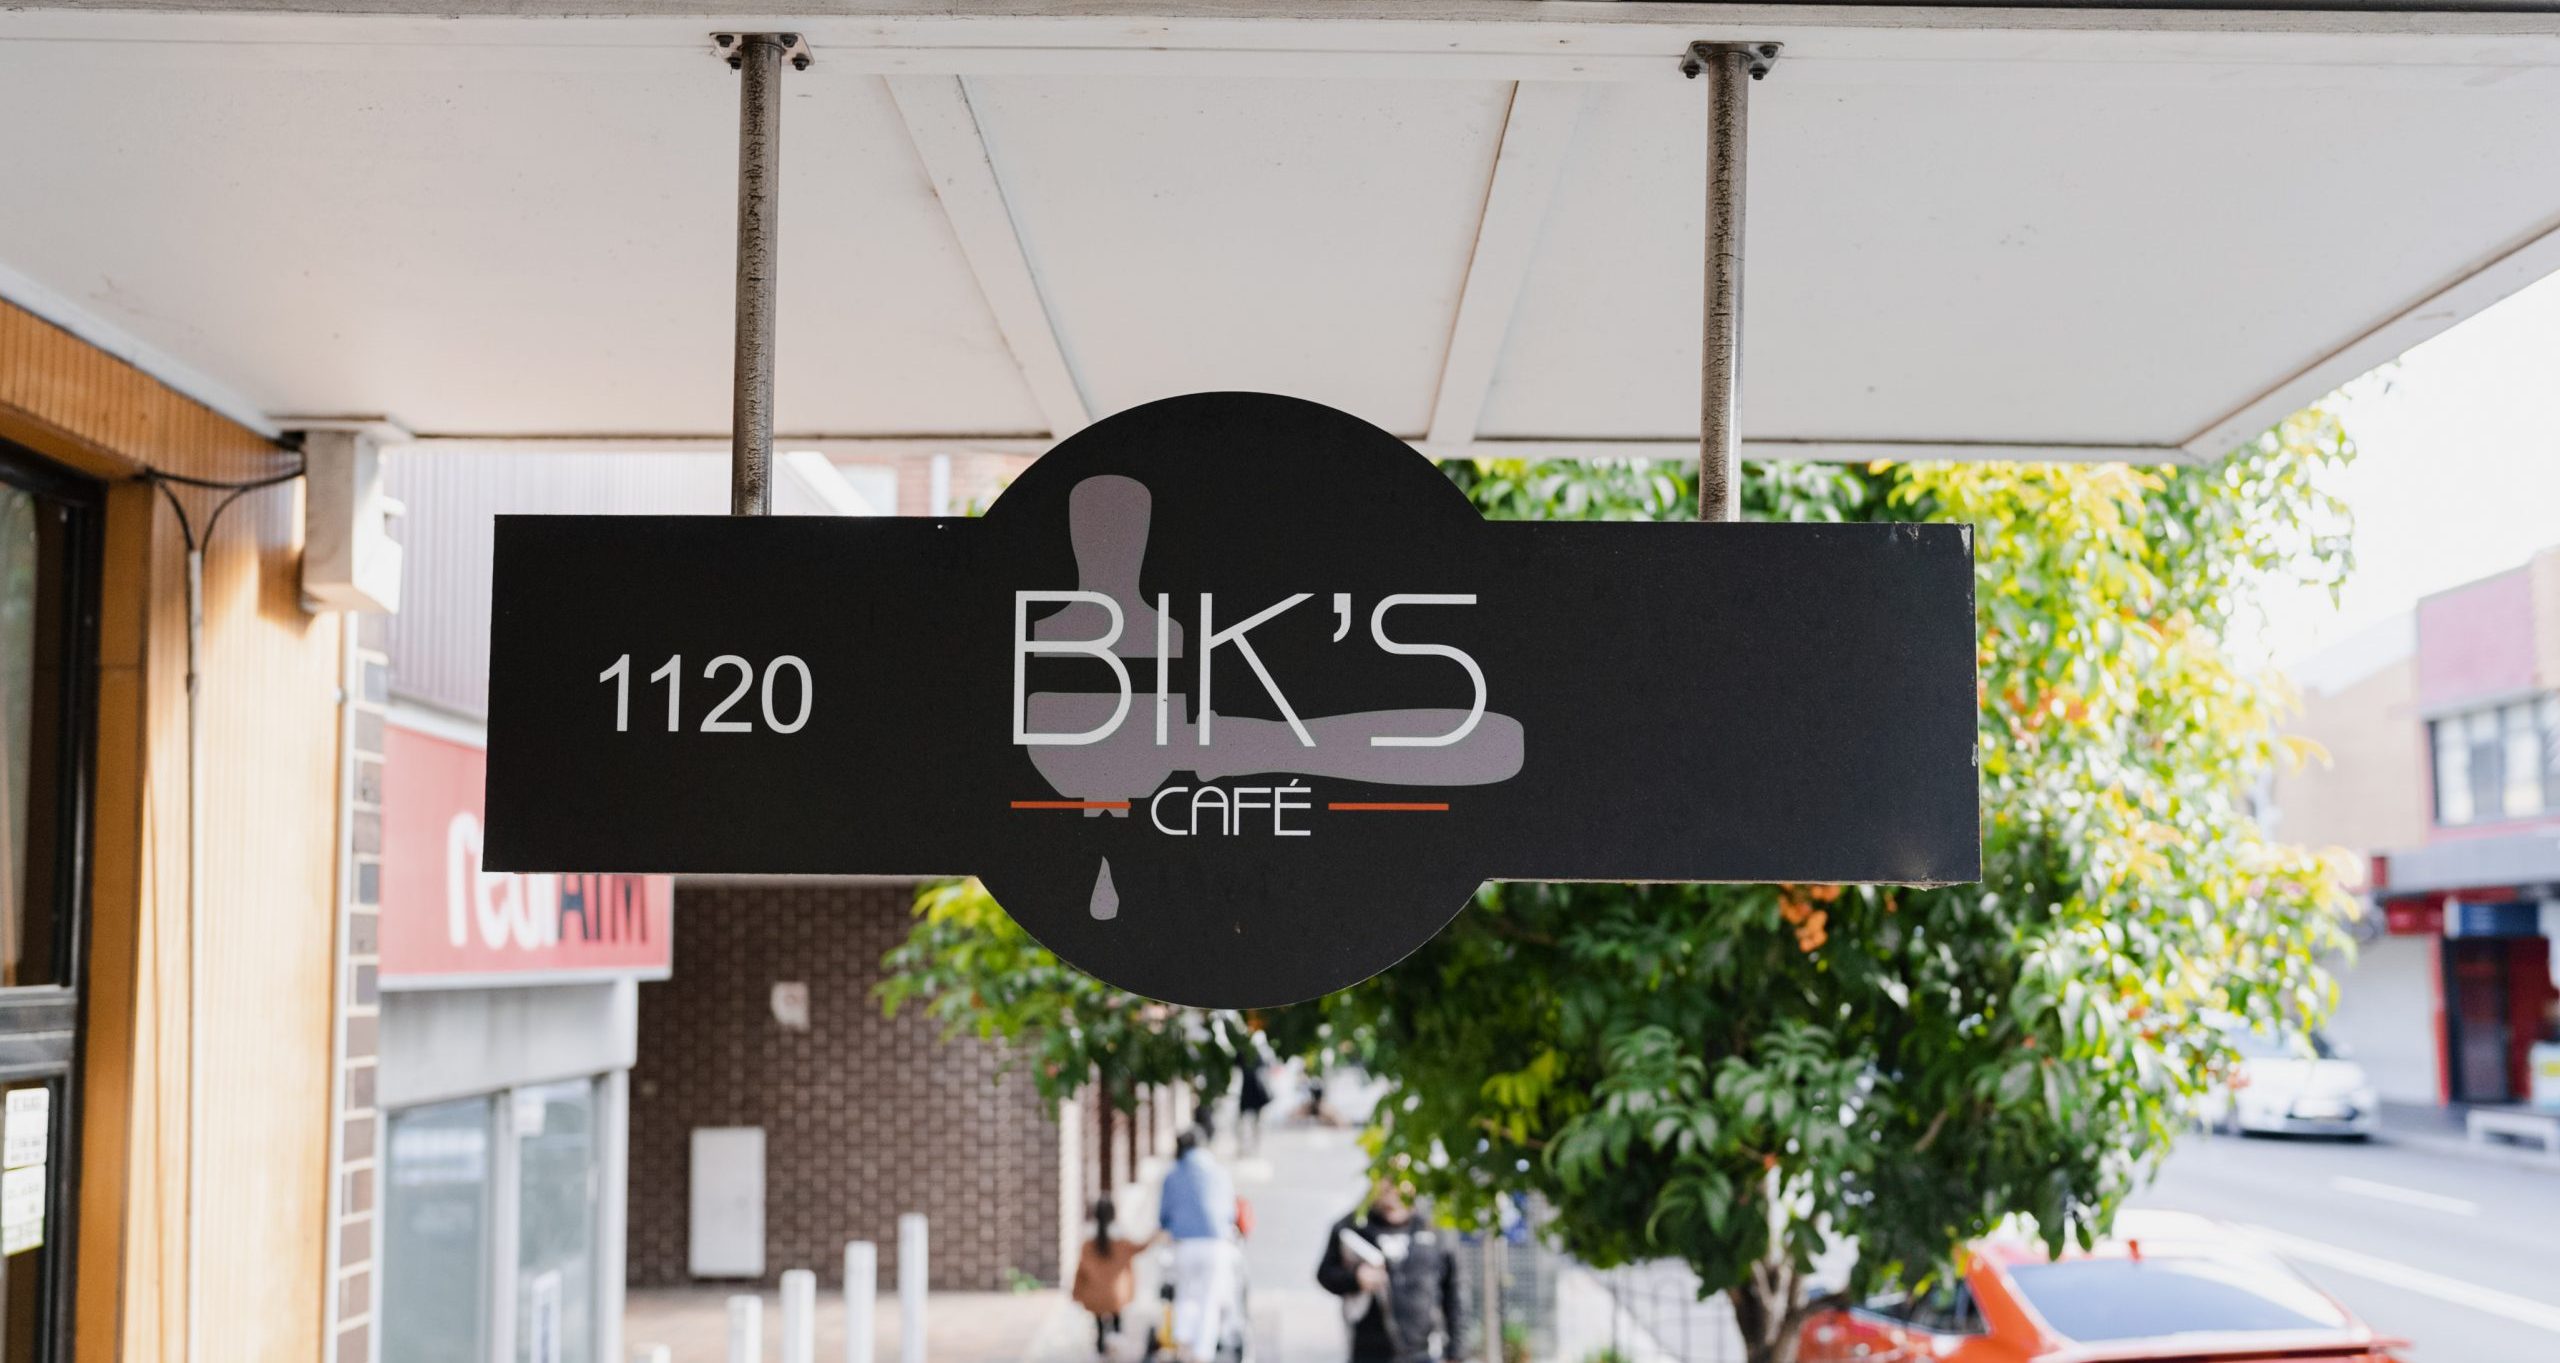 Bik's Cafe